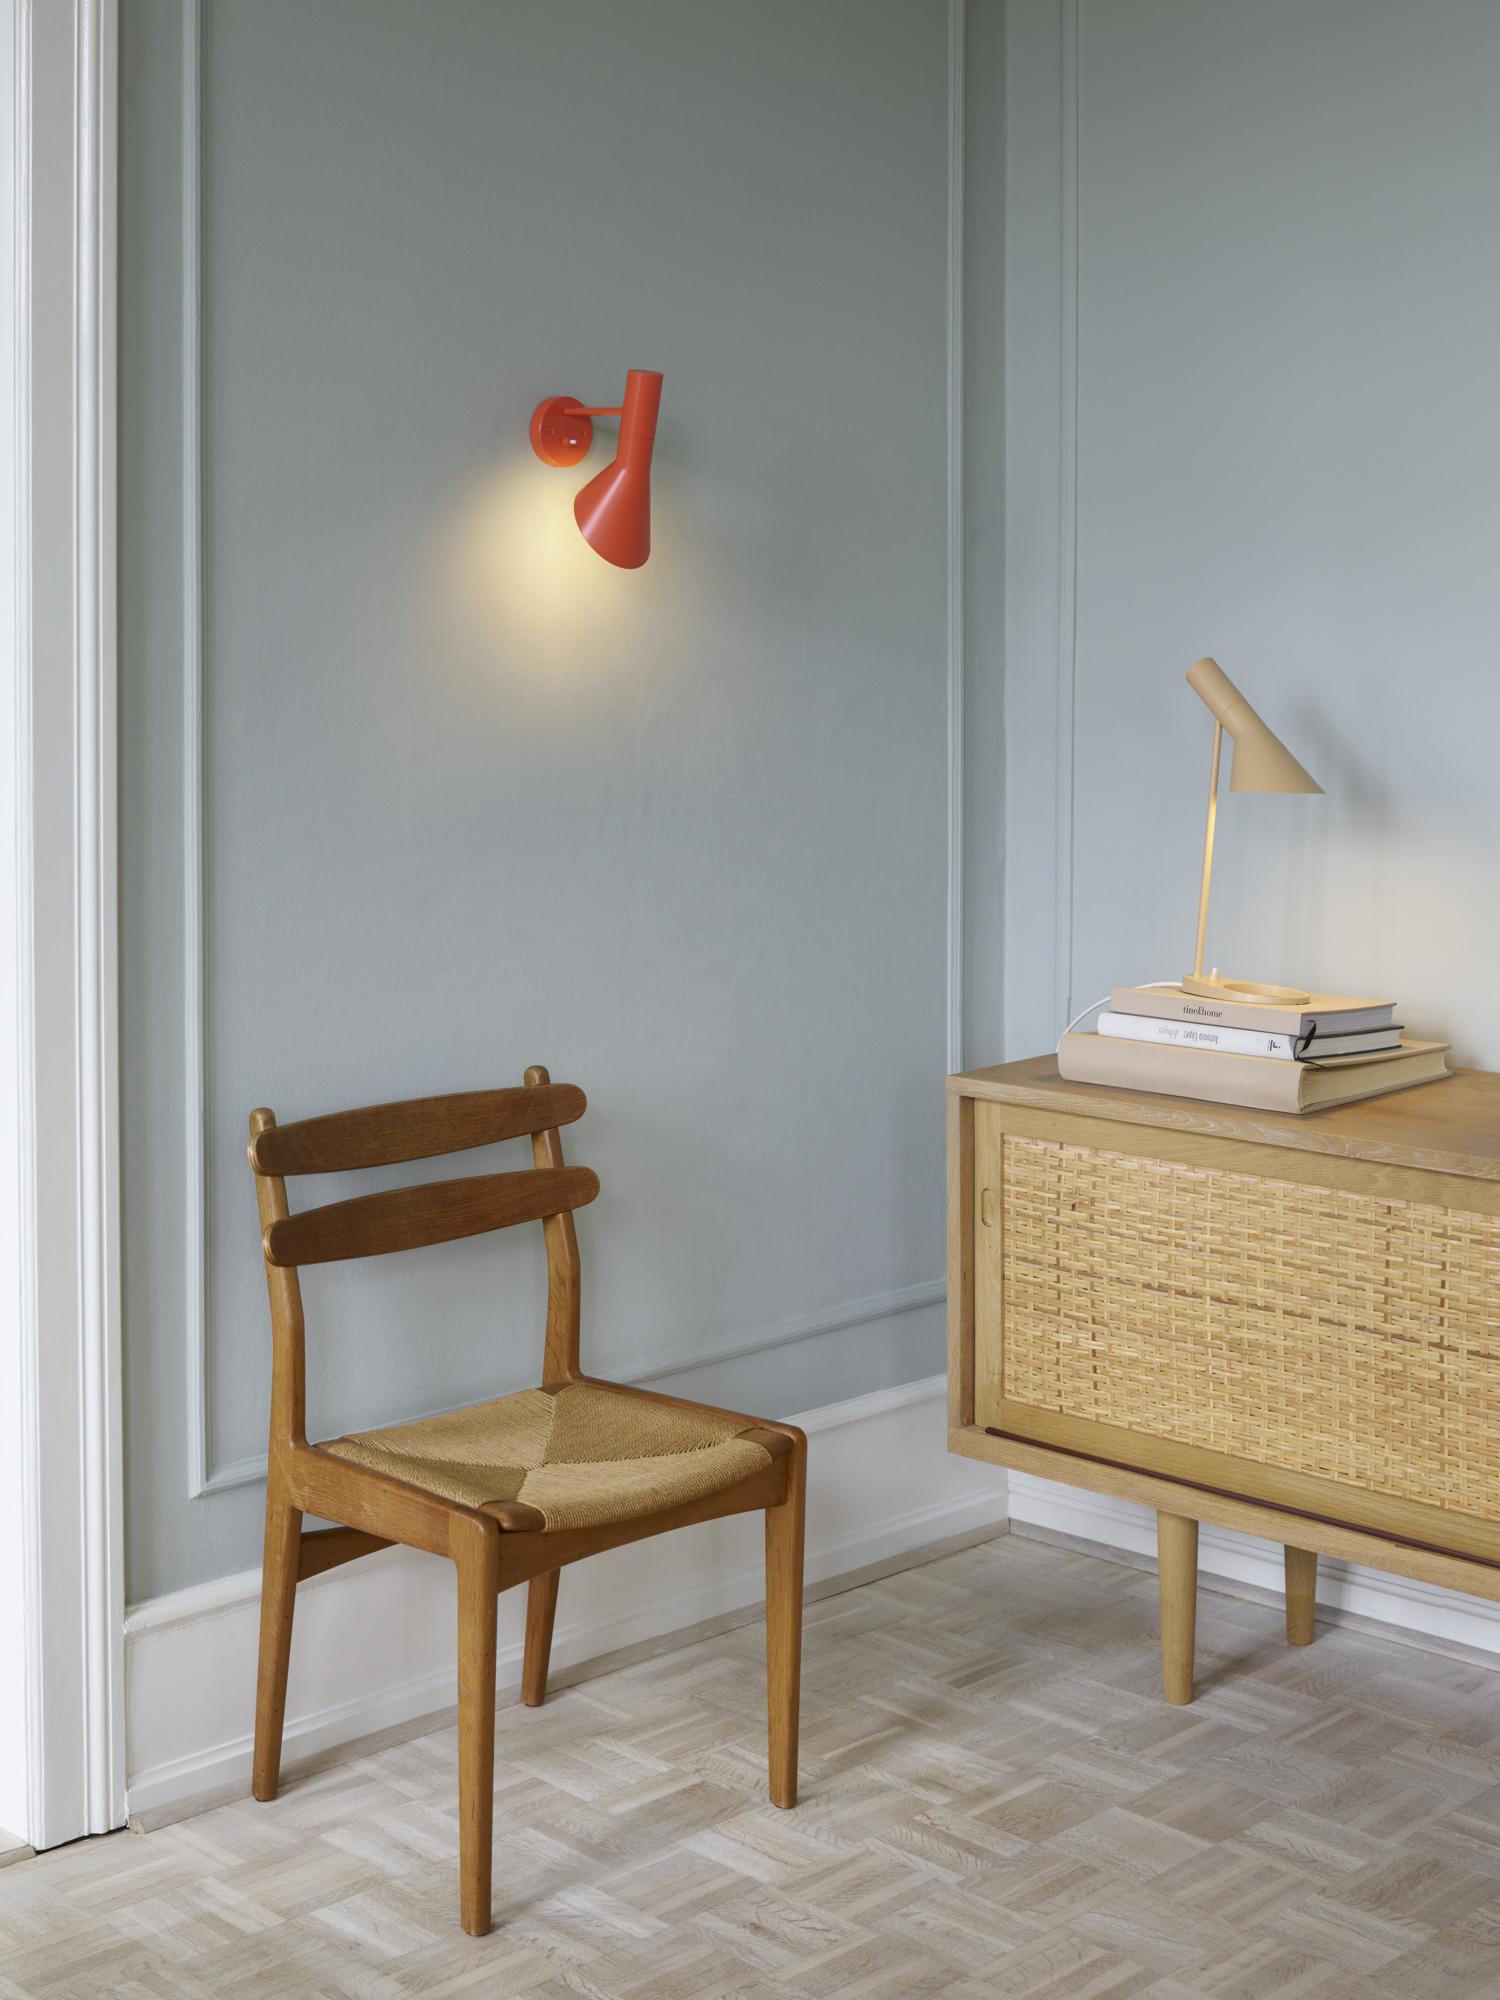 Arne Jacobsen 'AJ Mini' Table Lamp in Soft Lemon for Louis Poulsen For Sale 5